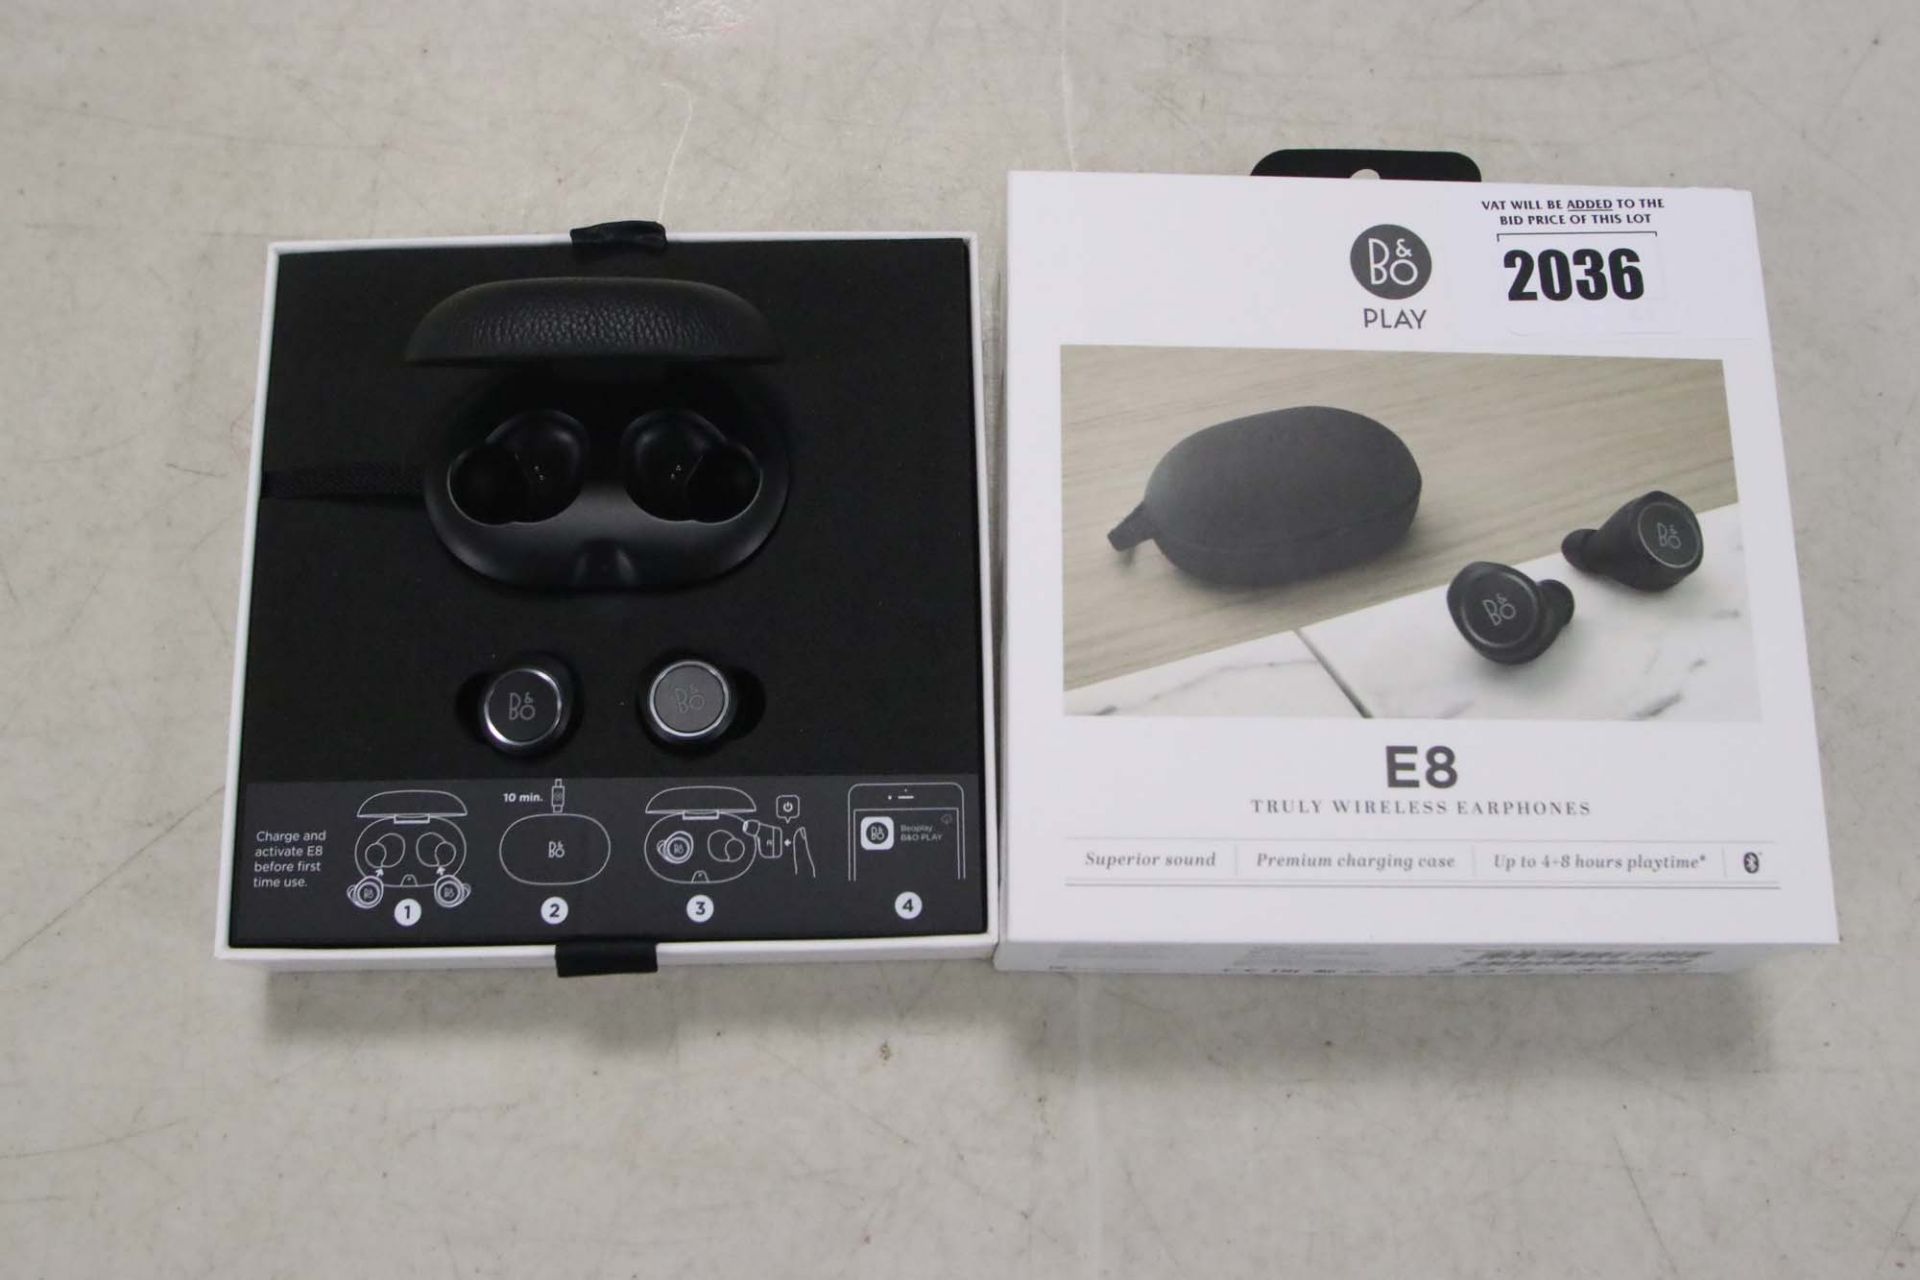 Bang & Olufsen E8 True Wireless earphones in box